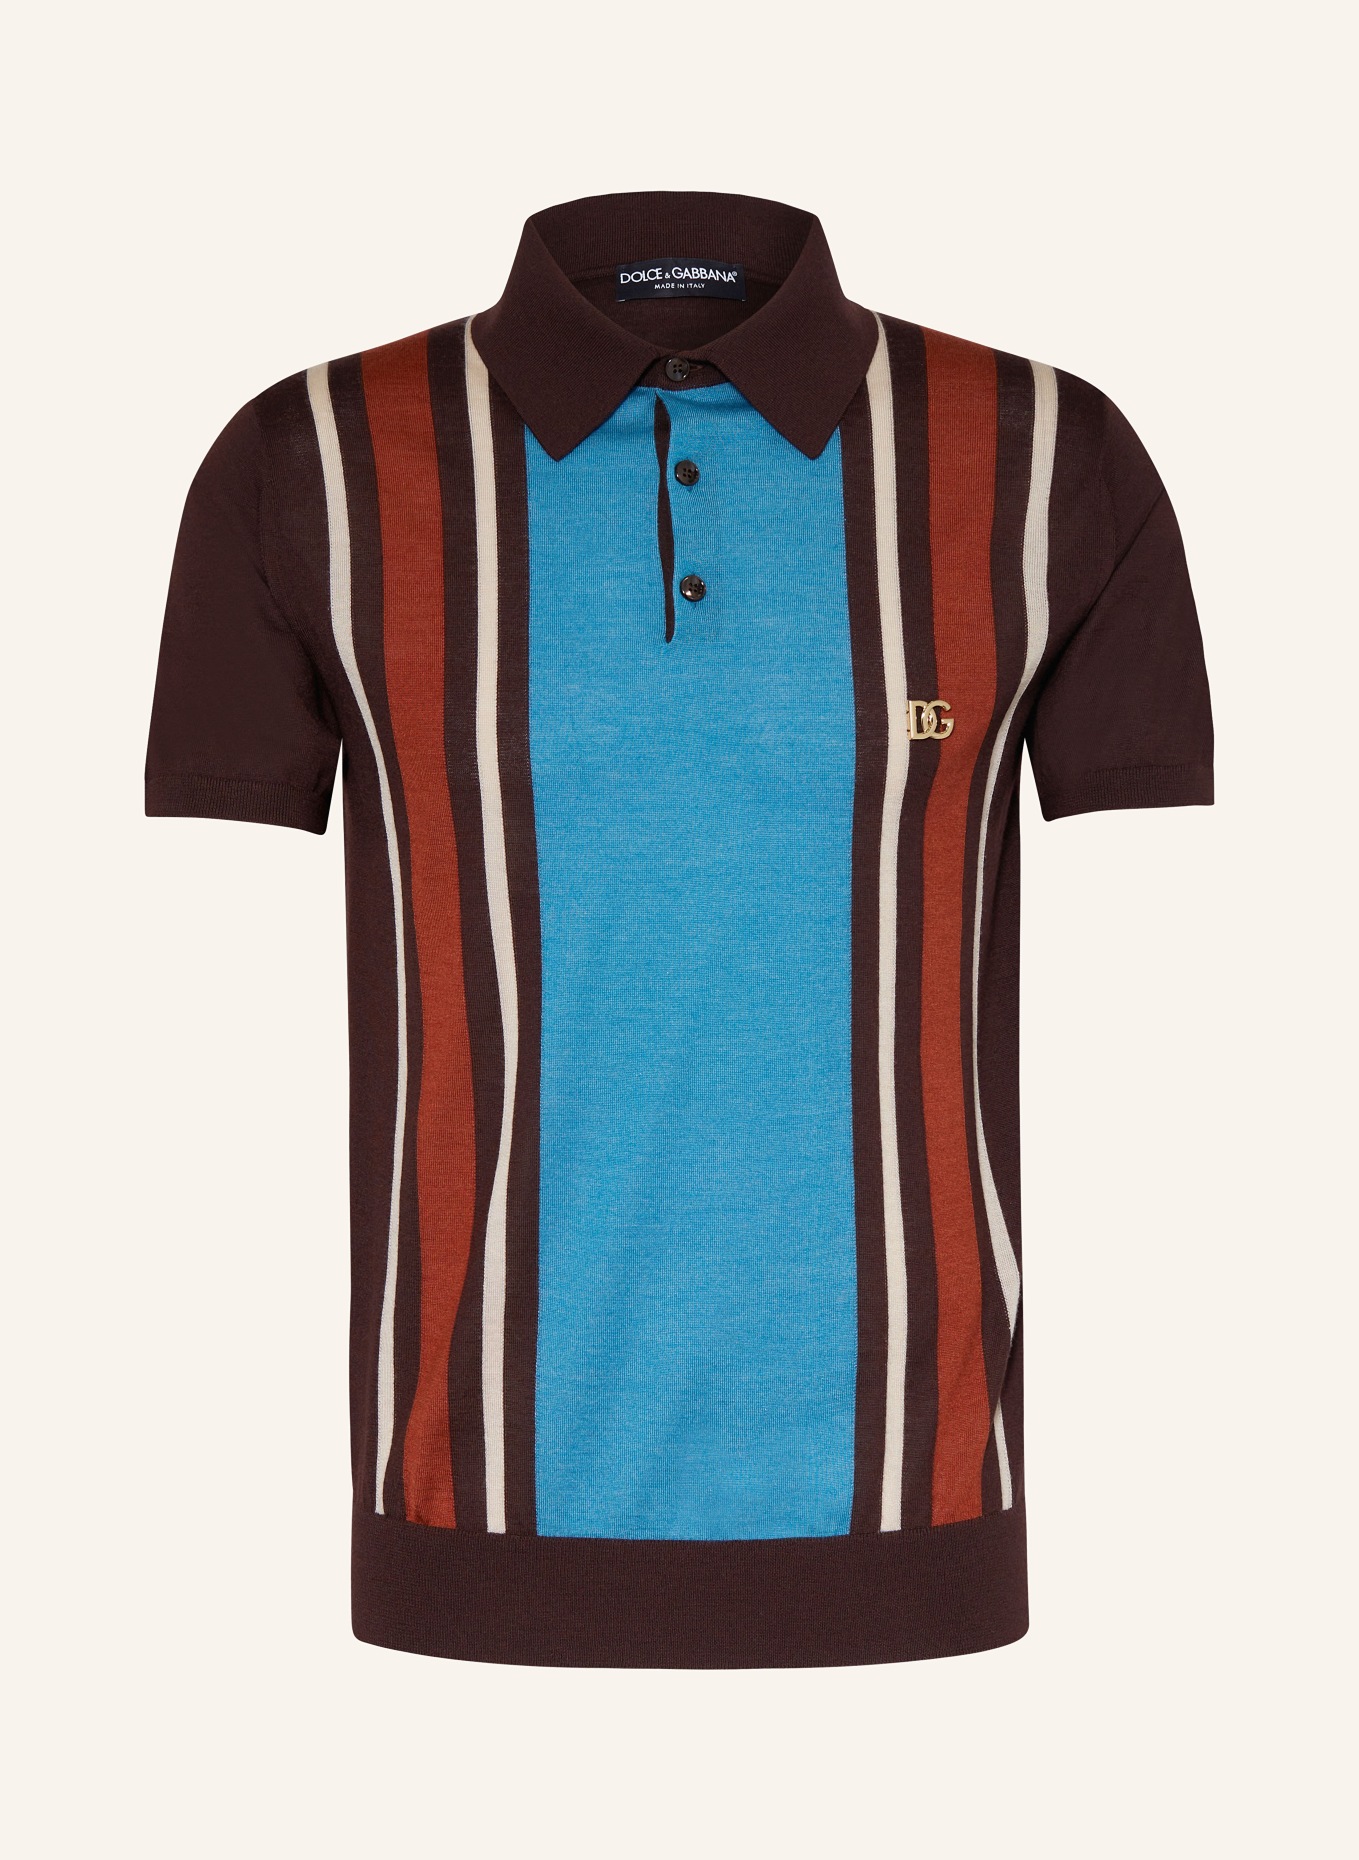 DOLCE & GABBANA Strick-Poloshirt Slim Fit aus Cashmere mit Seide, Farbe: BRAUN/ BLAU/ ORANGE (Bild 1)